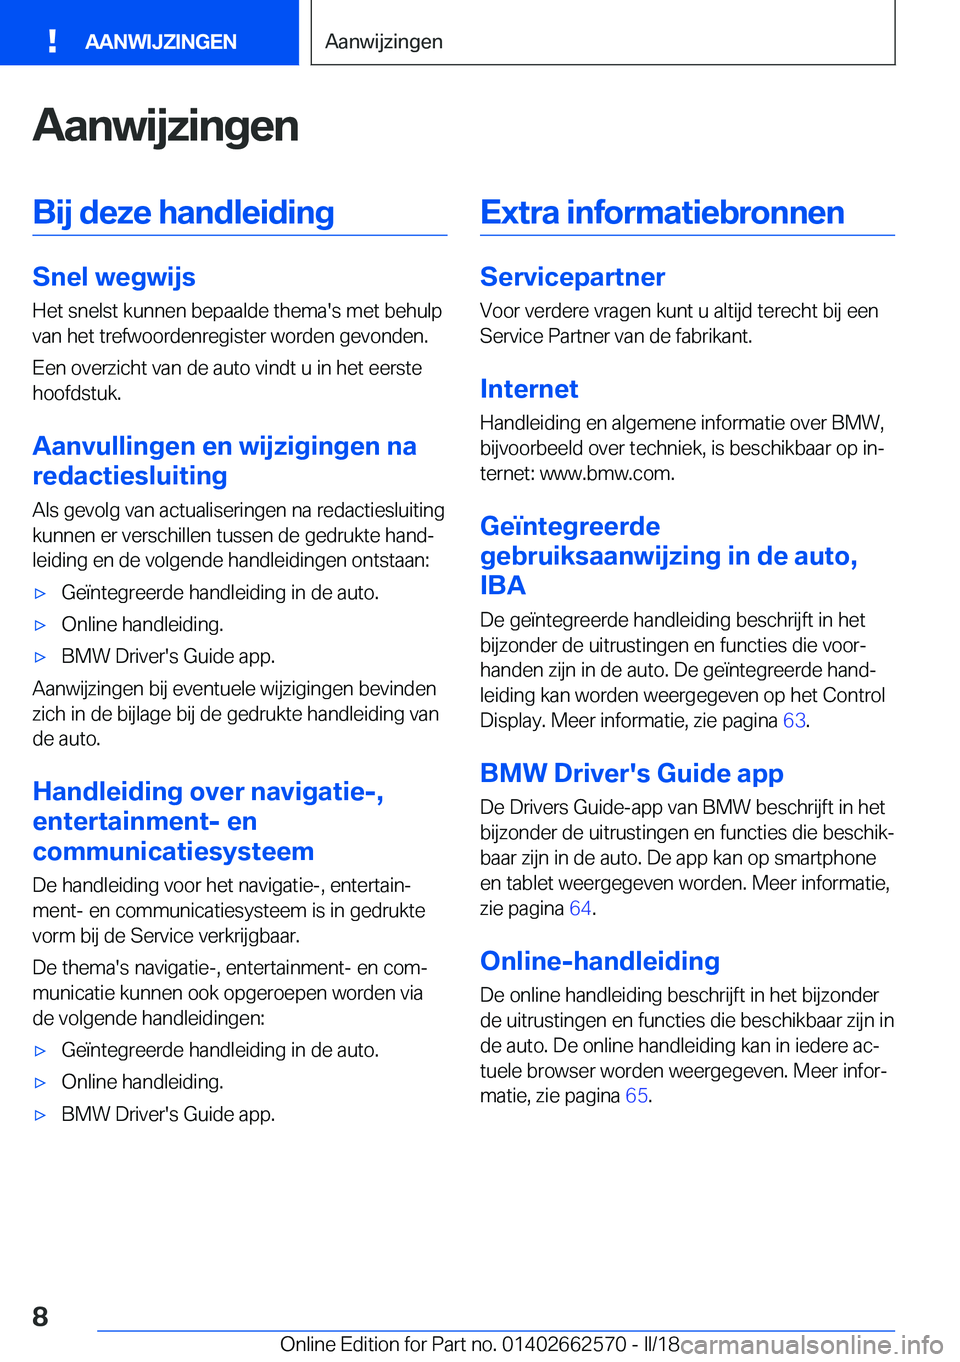 BMW M2 2018  Instructieboekjes (in Dutch) �A�a�n�w�i�j�z�i�n�g�e�n�B�i�j��d�e�z�e��h�a�n�d�l�e�i�d�i�n�g
�S�n�e�l��w�e�g�w�i�j�s
�H�e�t� �s�n�e�l�s�t� �k�u�n�n�e�n� �b�e�p�a�a�l�d�e� �t�h�e�m�a�'�s� �m�e�t� �b�e�h�u�l�p
�v�a�n� �h�e�t�